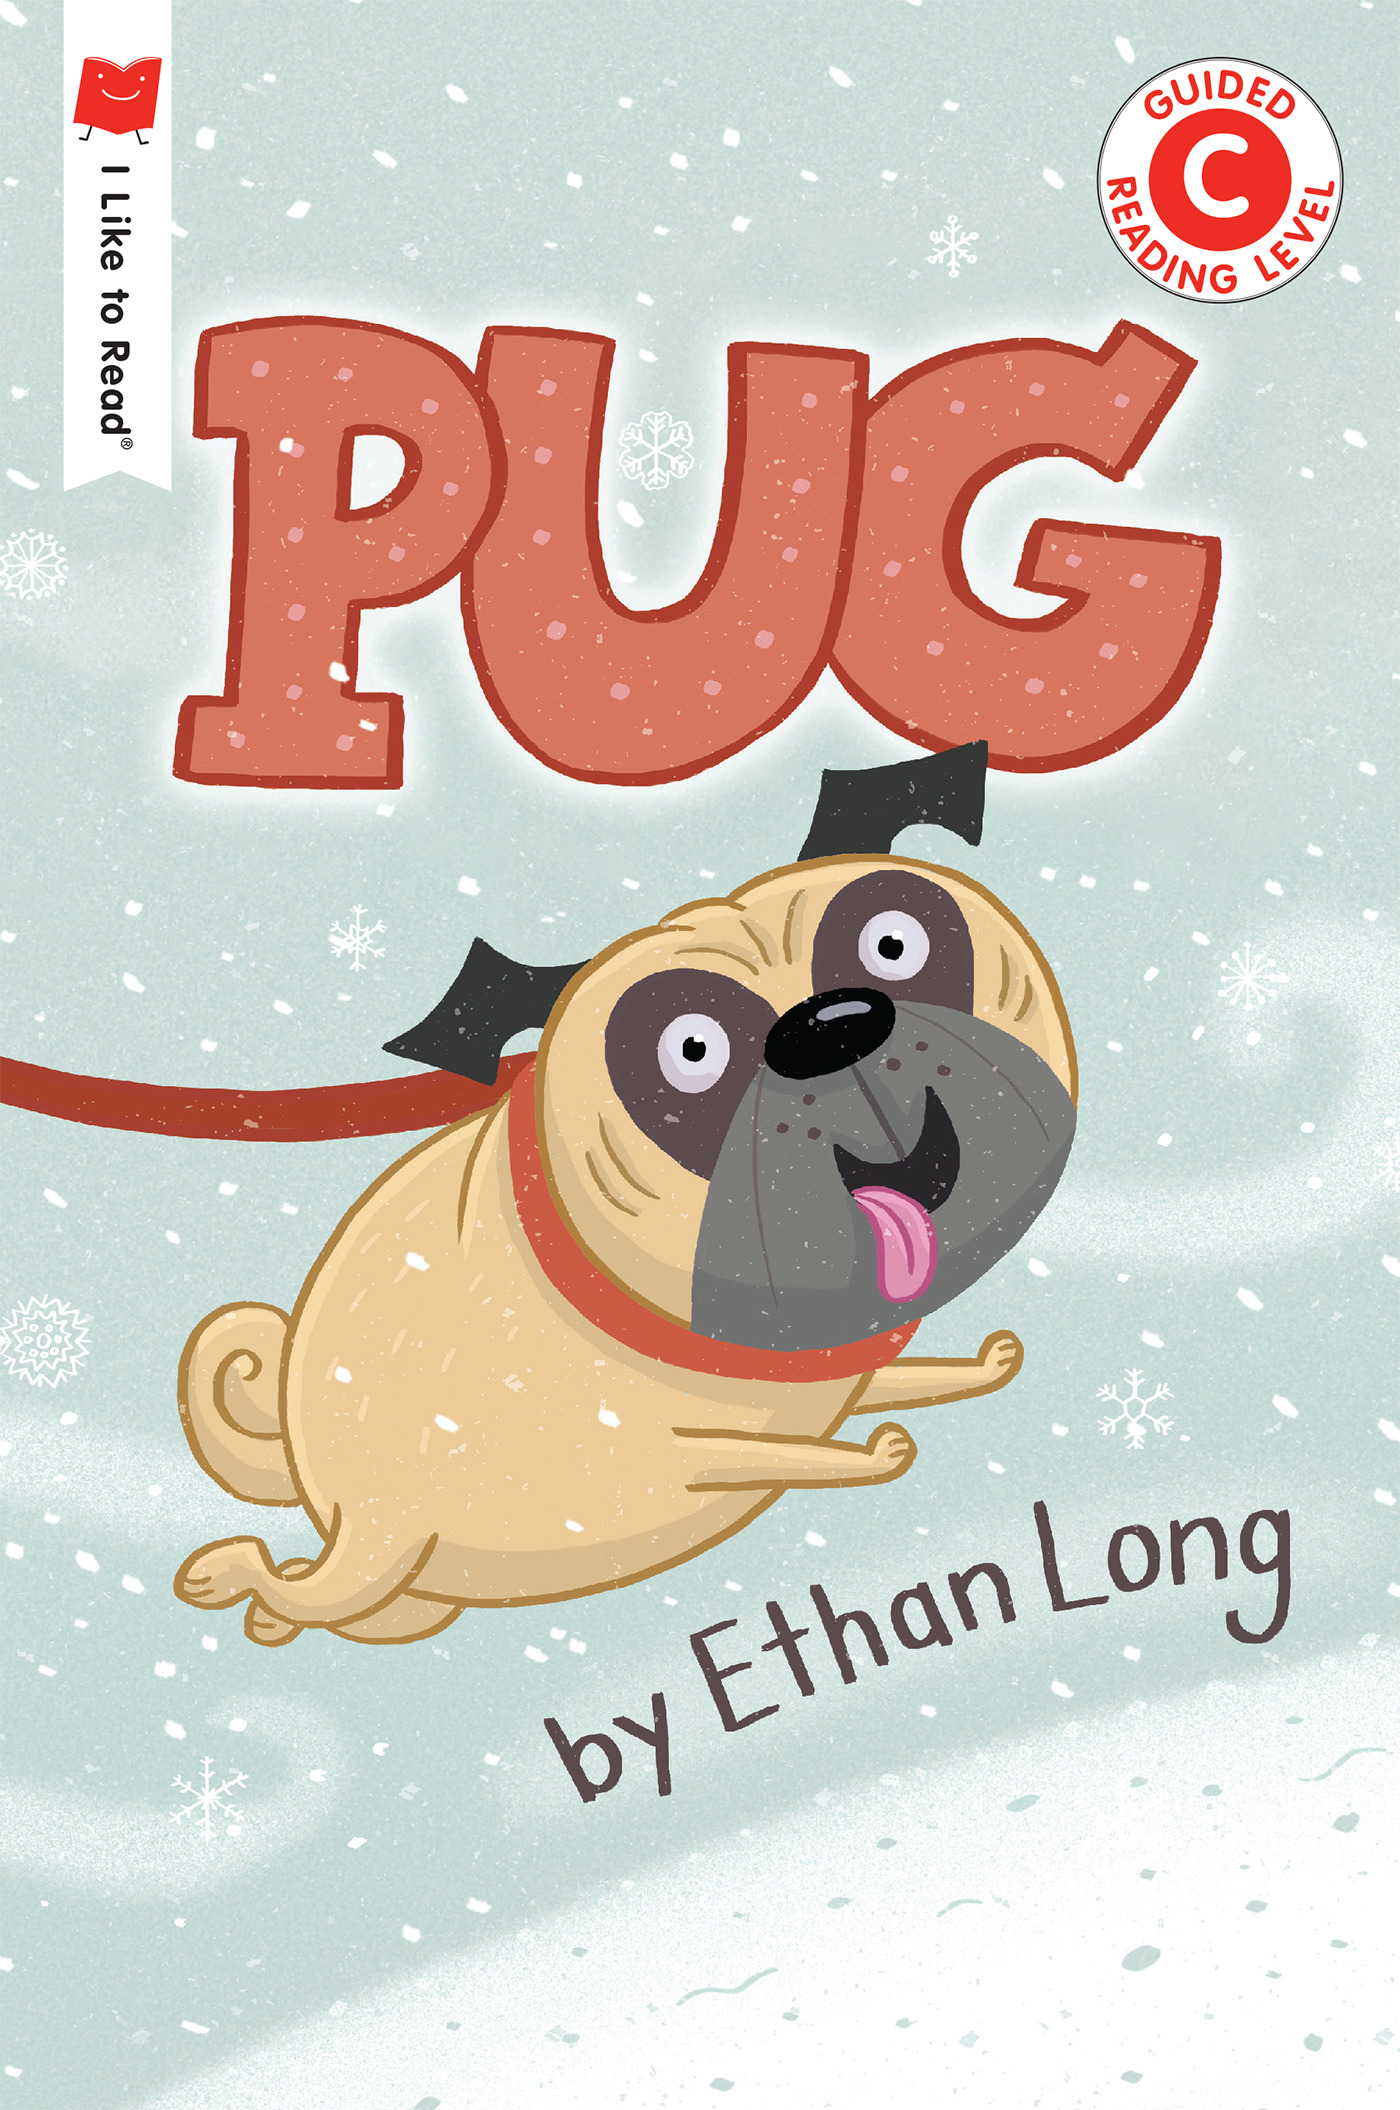 I Like to Read - Pug | Long, Ethan